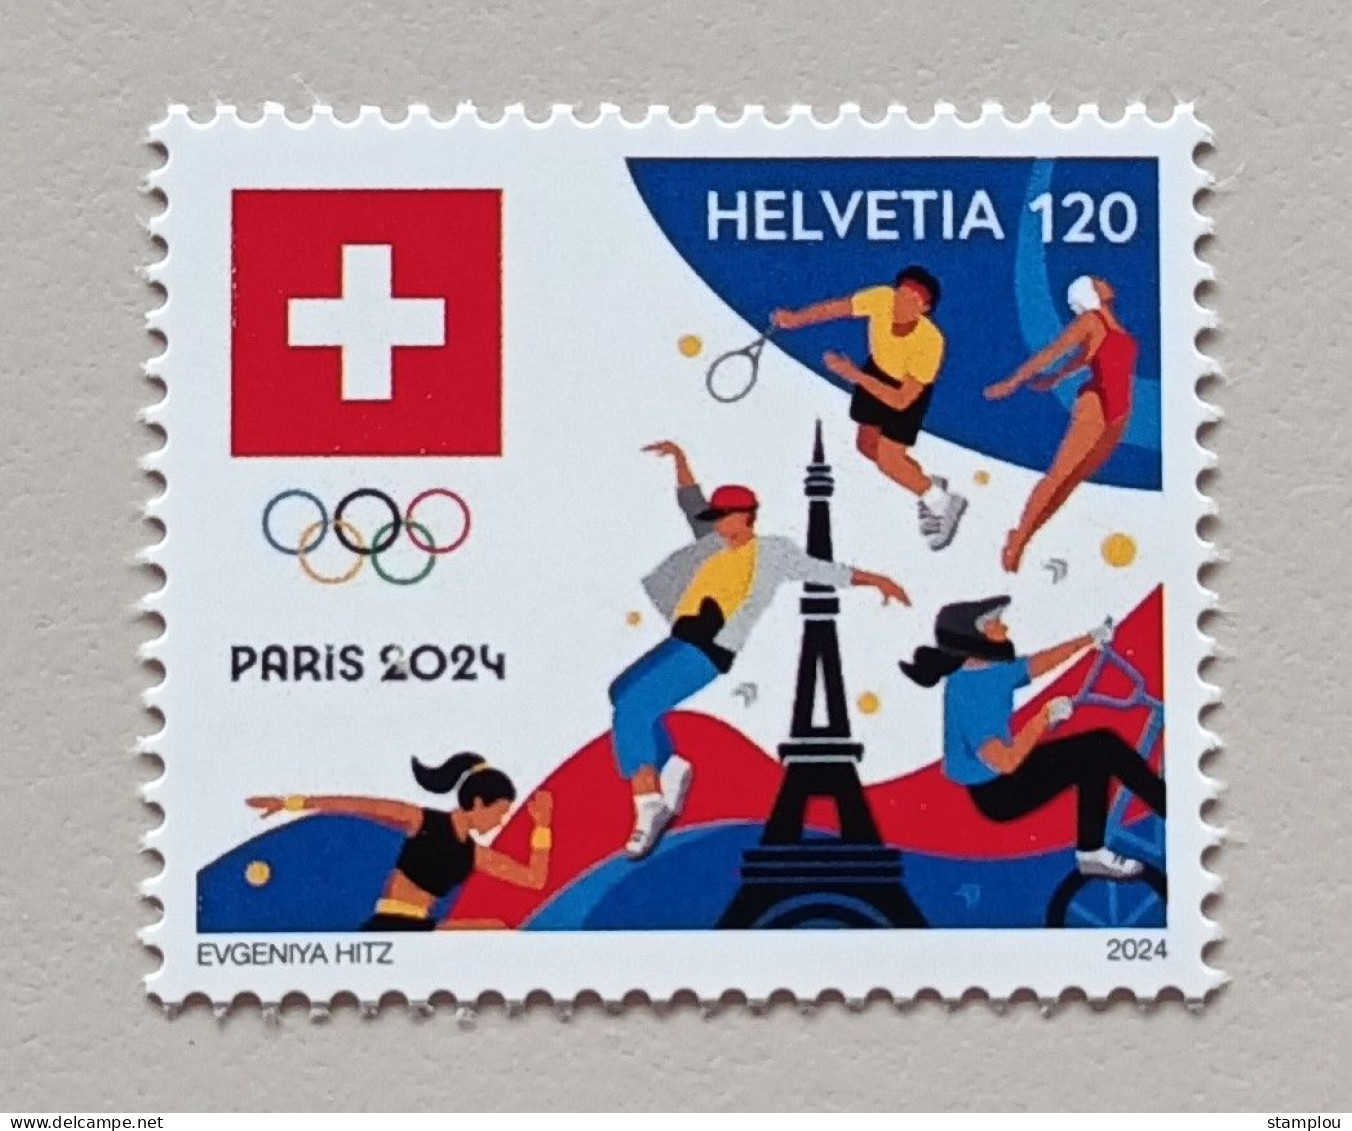 Zwitserland-Switzerland 2024 Paris Summer Olympic Games - Set - Estate 2024 : Parigi